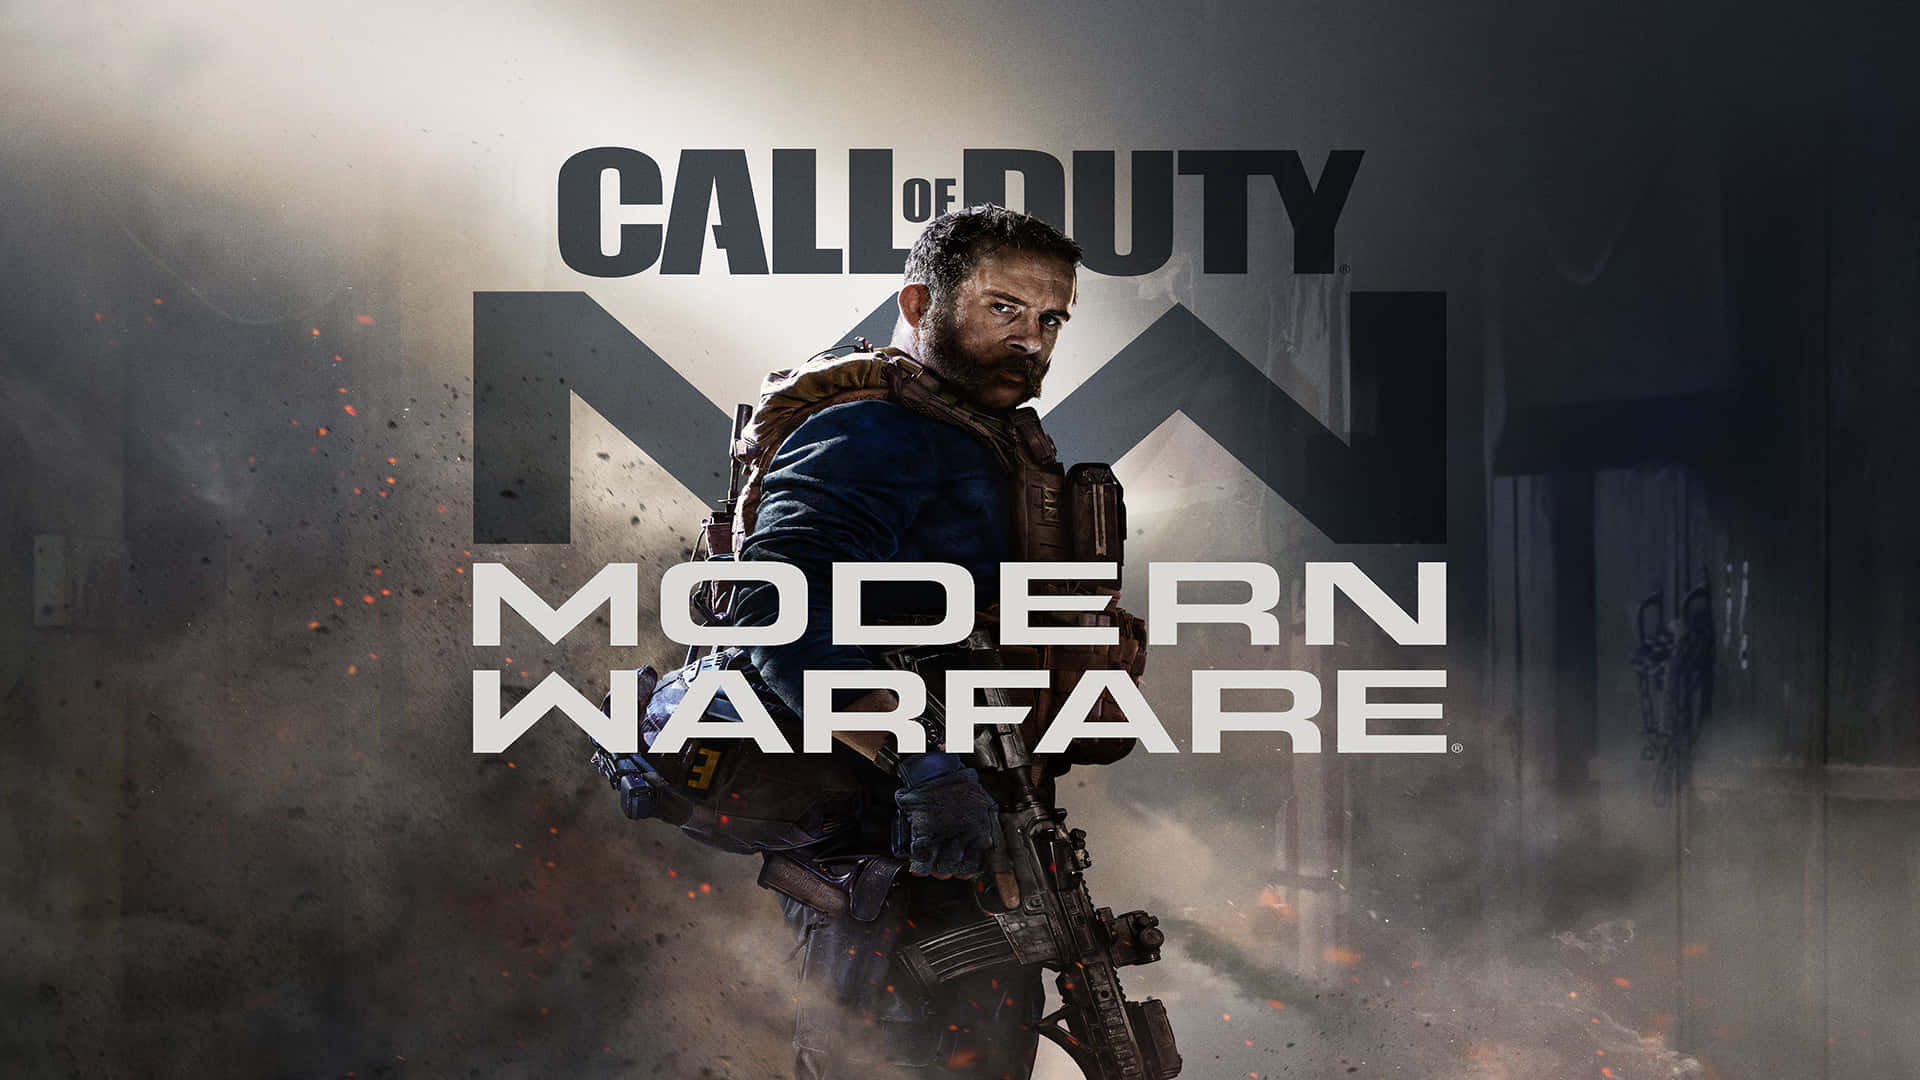 Förbereddig För Intensiv Strid I 'call Of Duty Modern Warfare'.